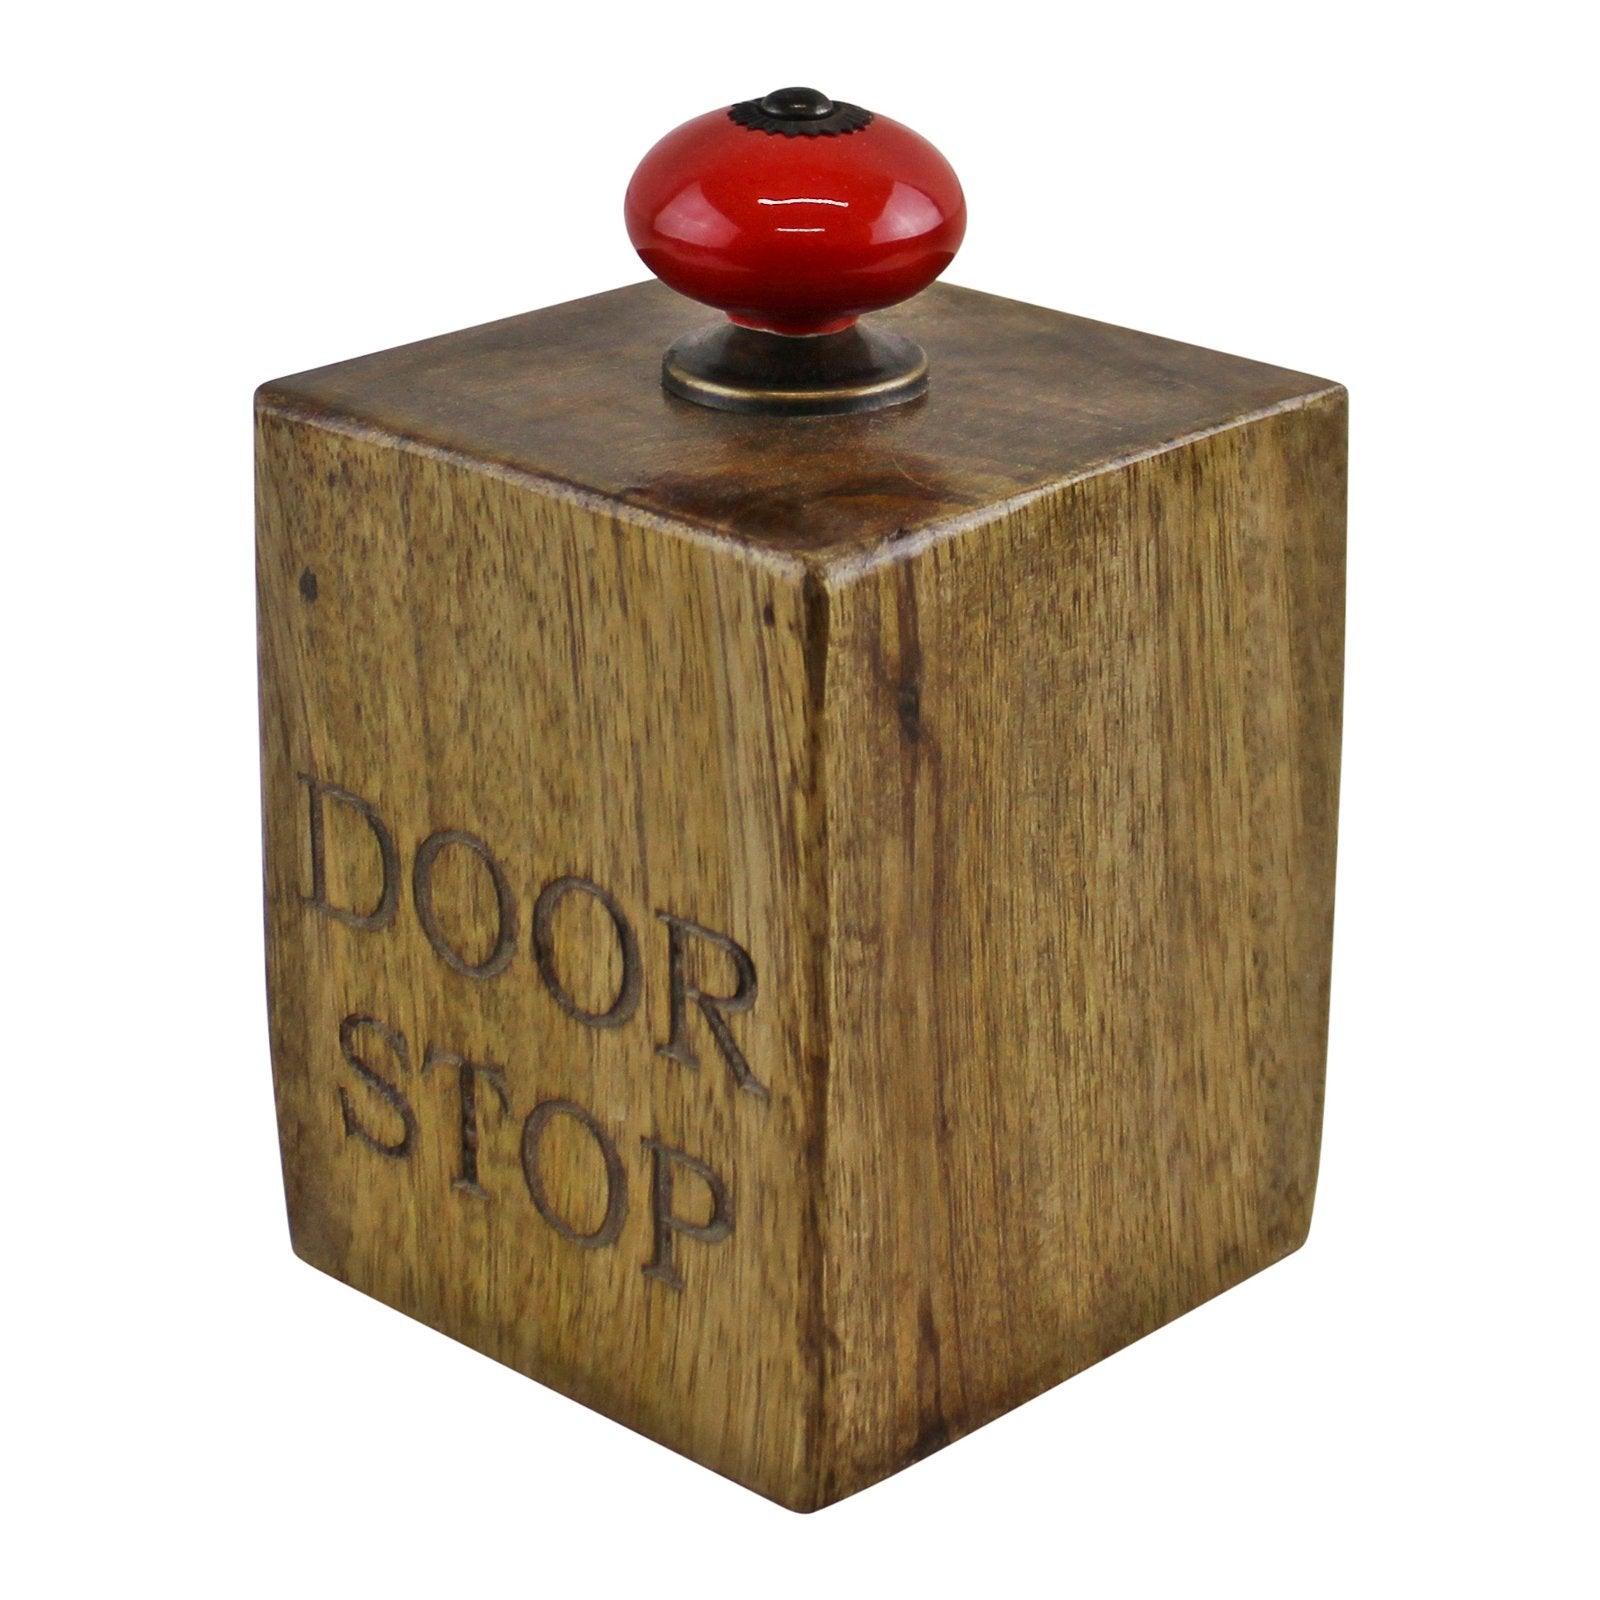 Mango Wood Doorstop With Red Ceramic Knob - £27.99 - Door Stops 